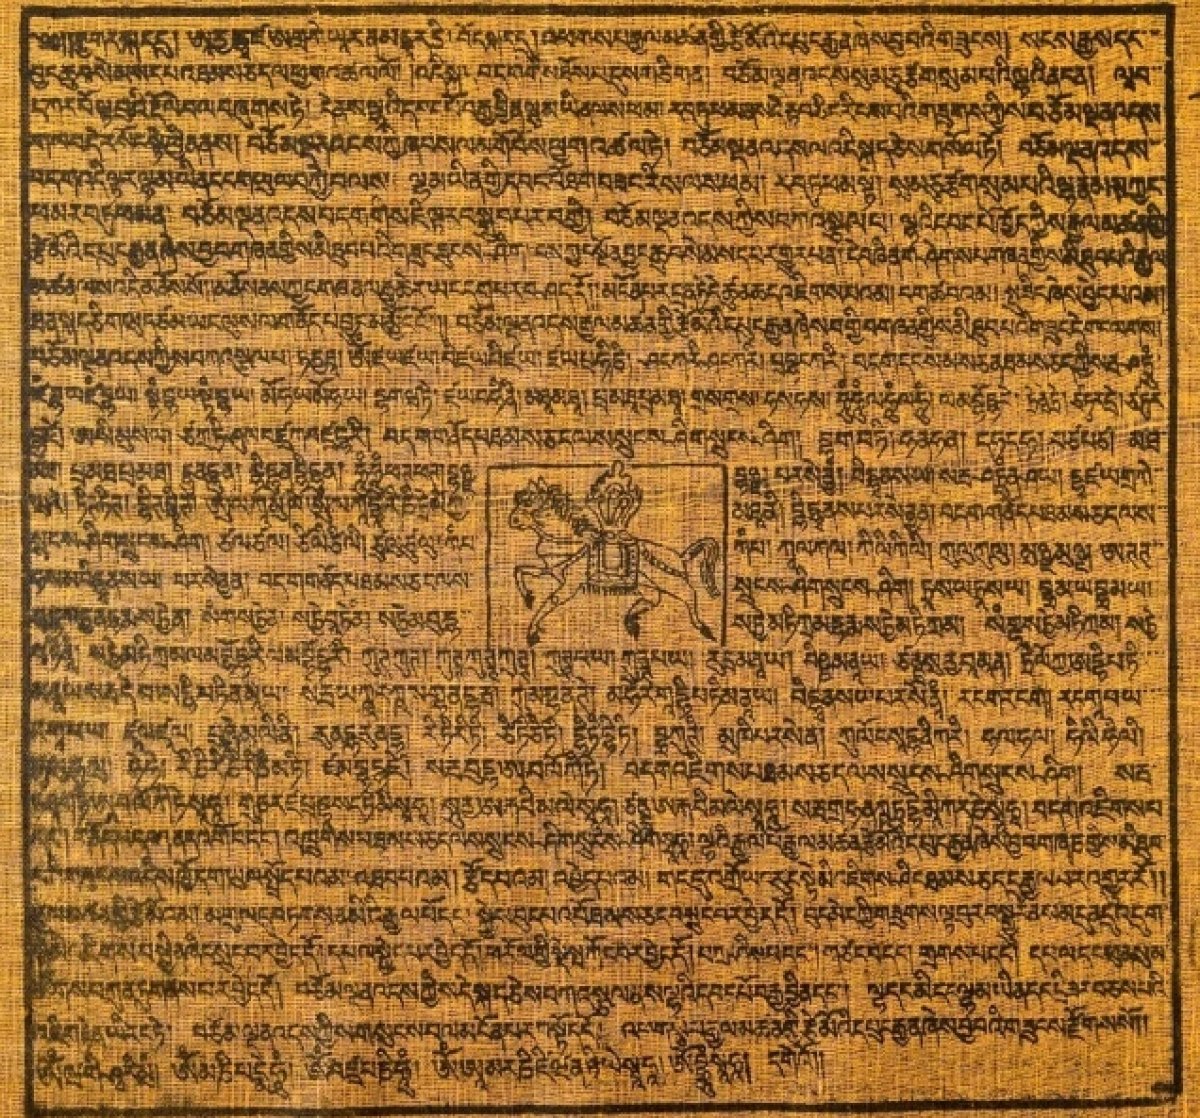 Sanskrit dilindeki problem, 2 bin 500 yıl sonra çözüldü #1